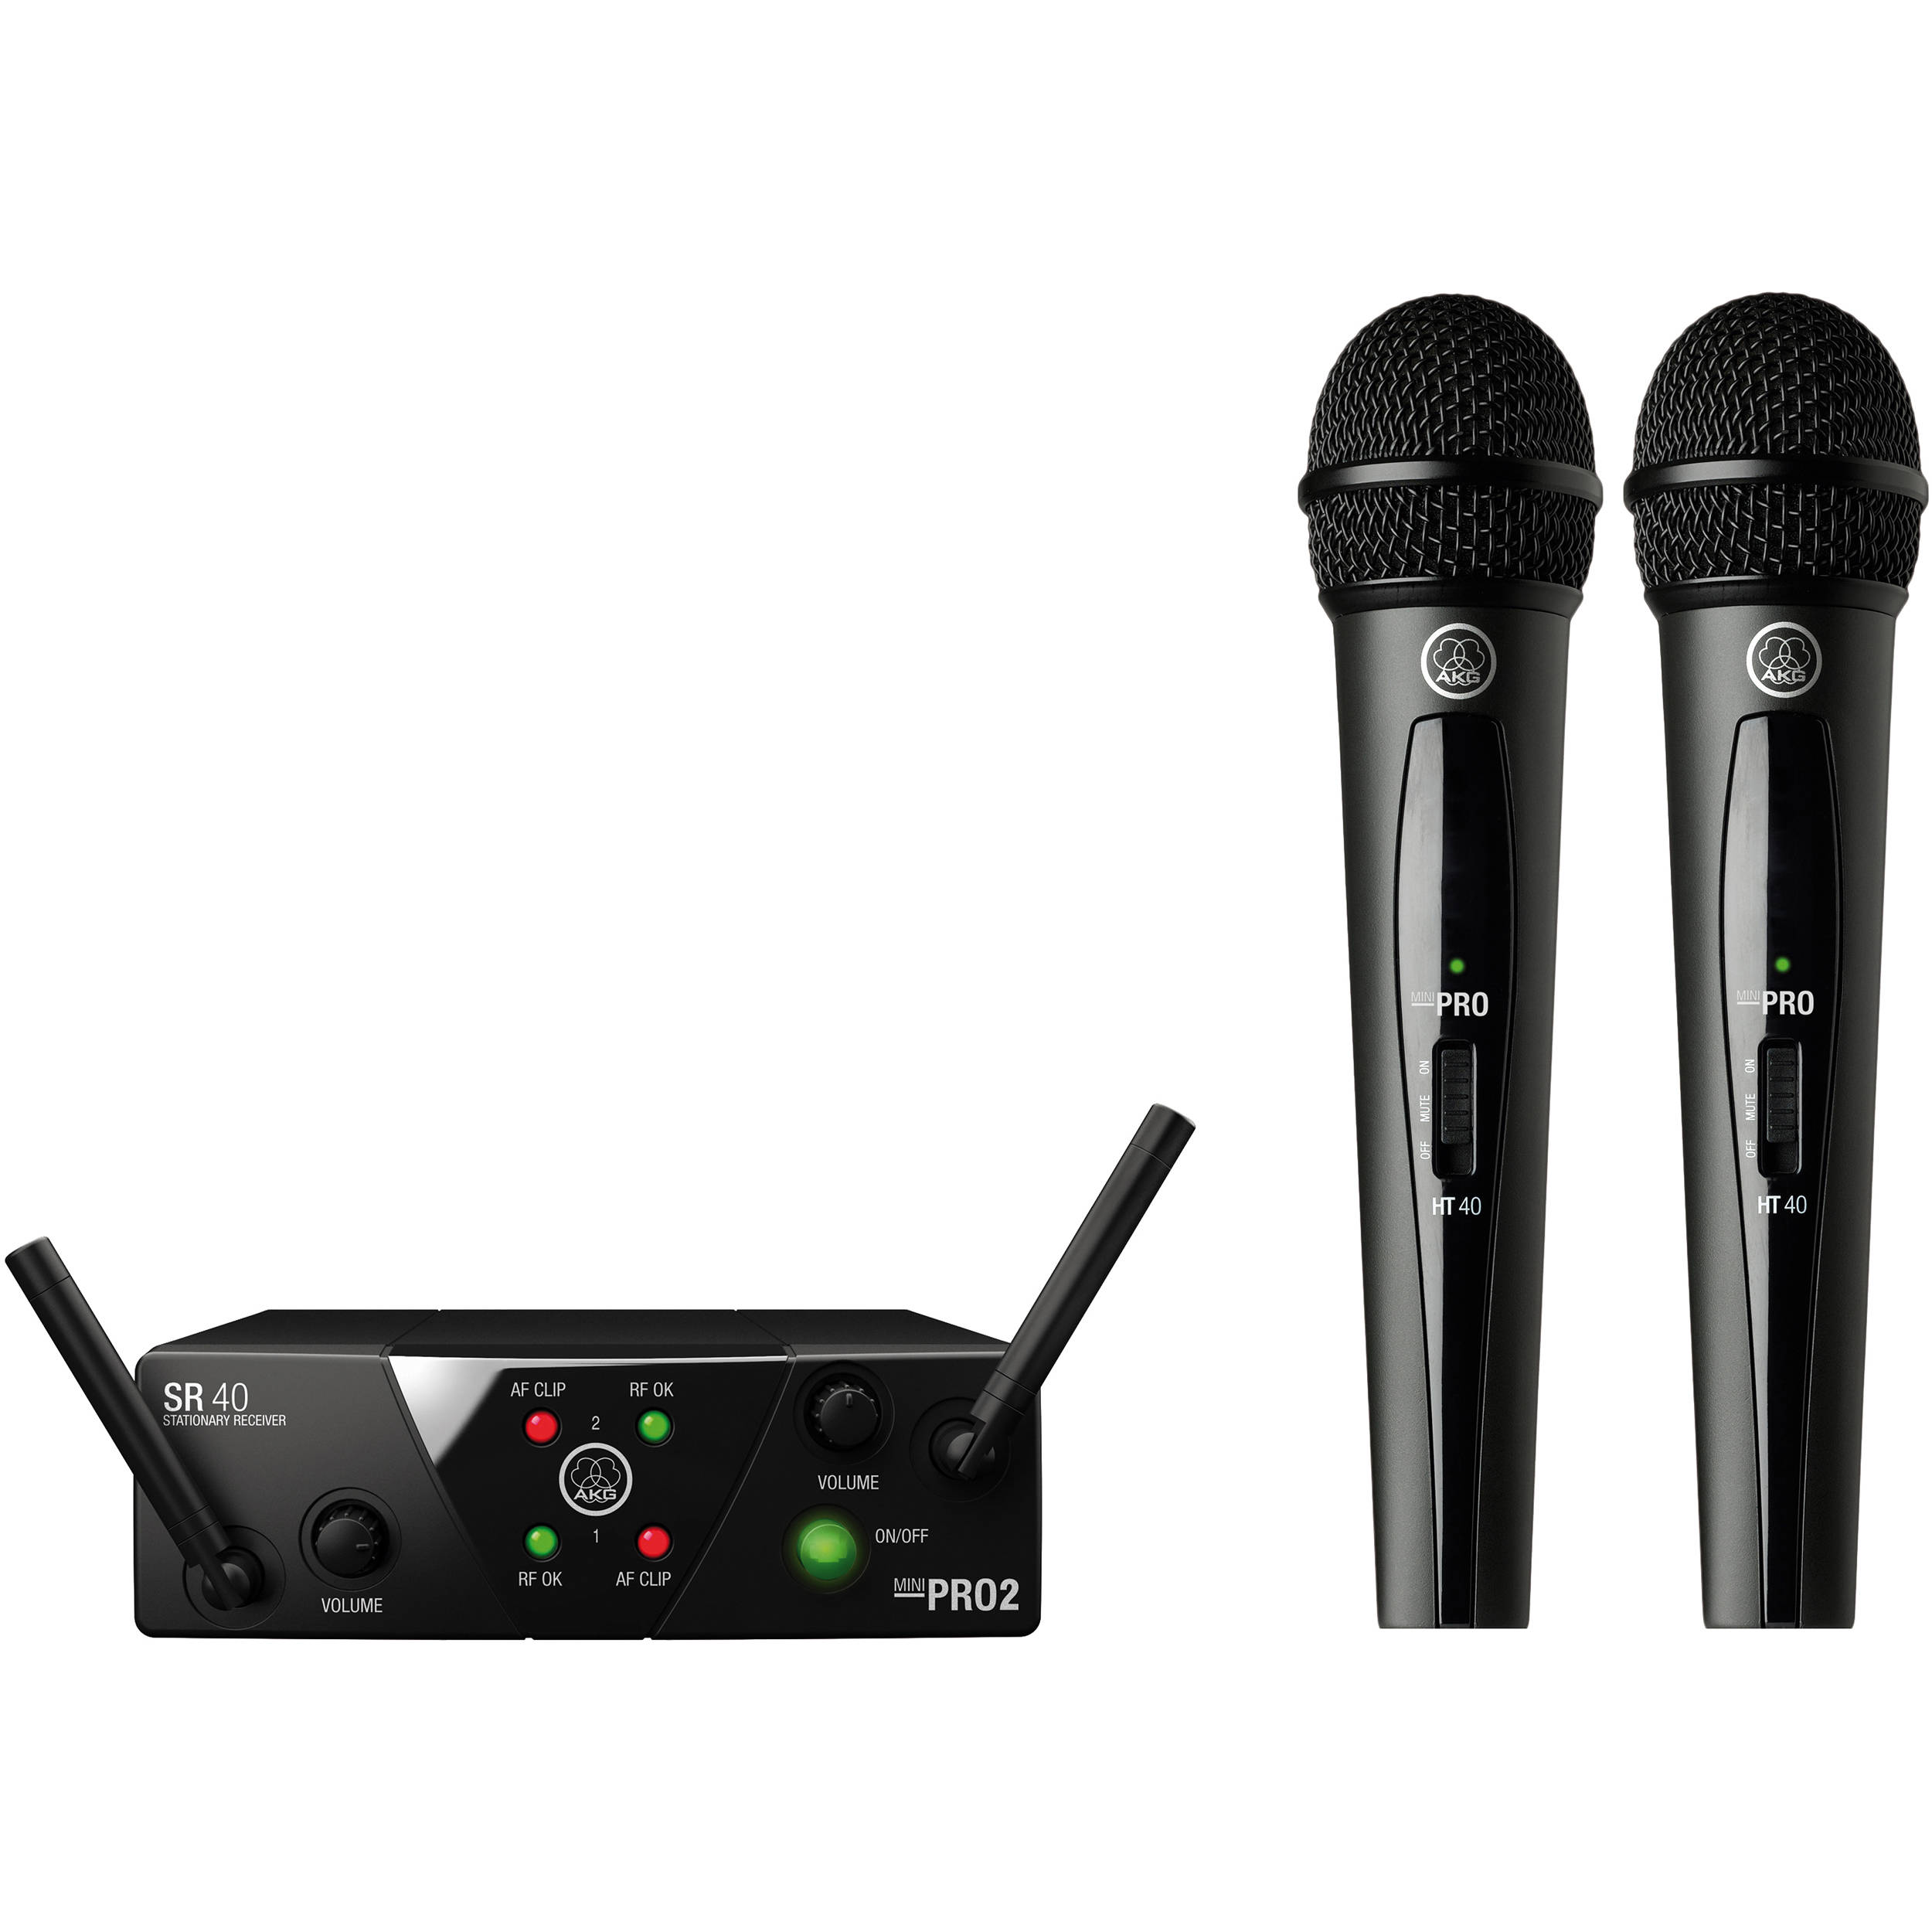 4 packs Mini microphone Mini microphone d'enregistrement vocal Micro  karaoké portable pour chanter Gain de place pour chanter ou enregistrer de  la voix 